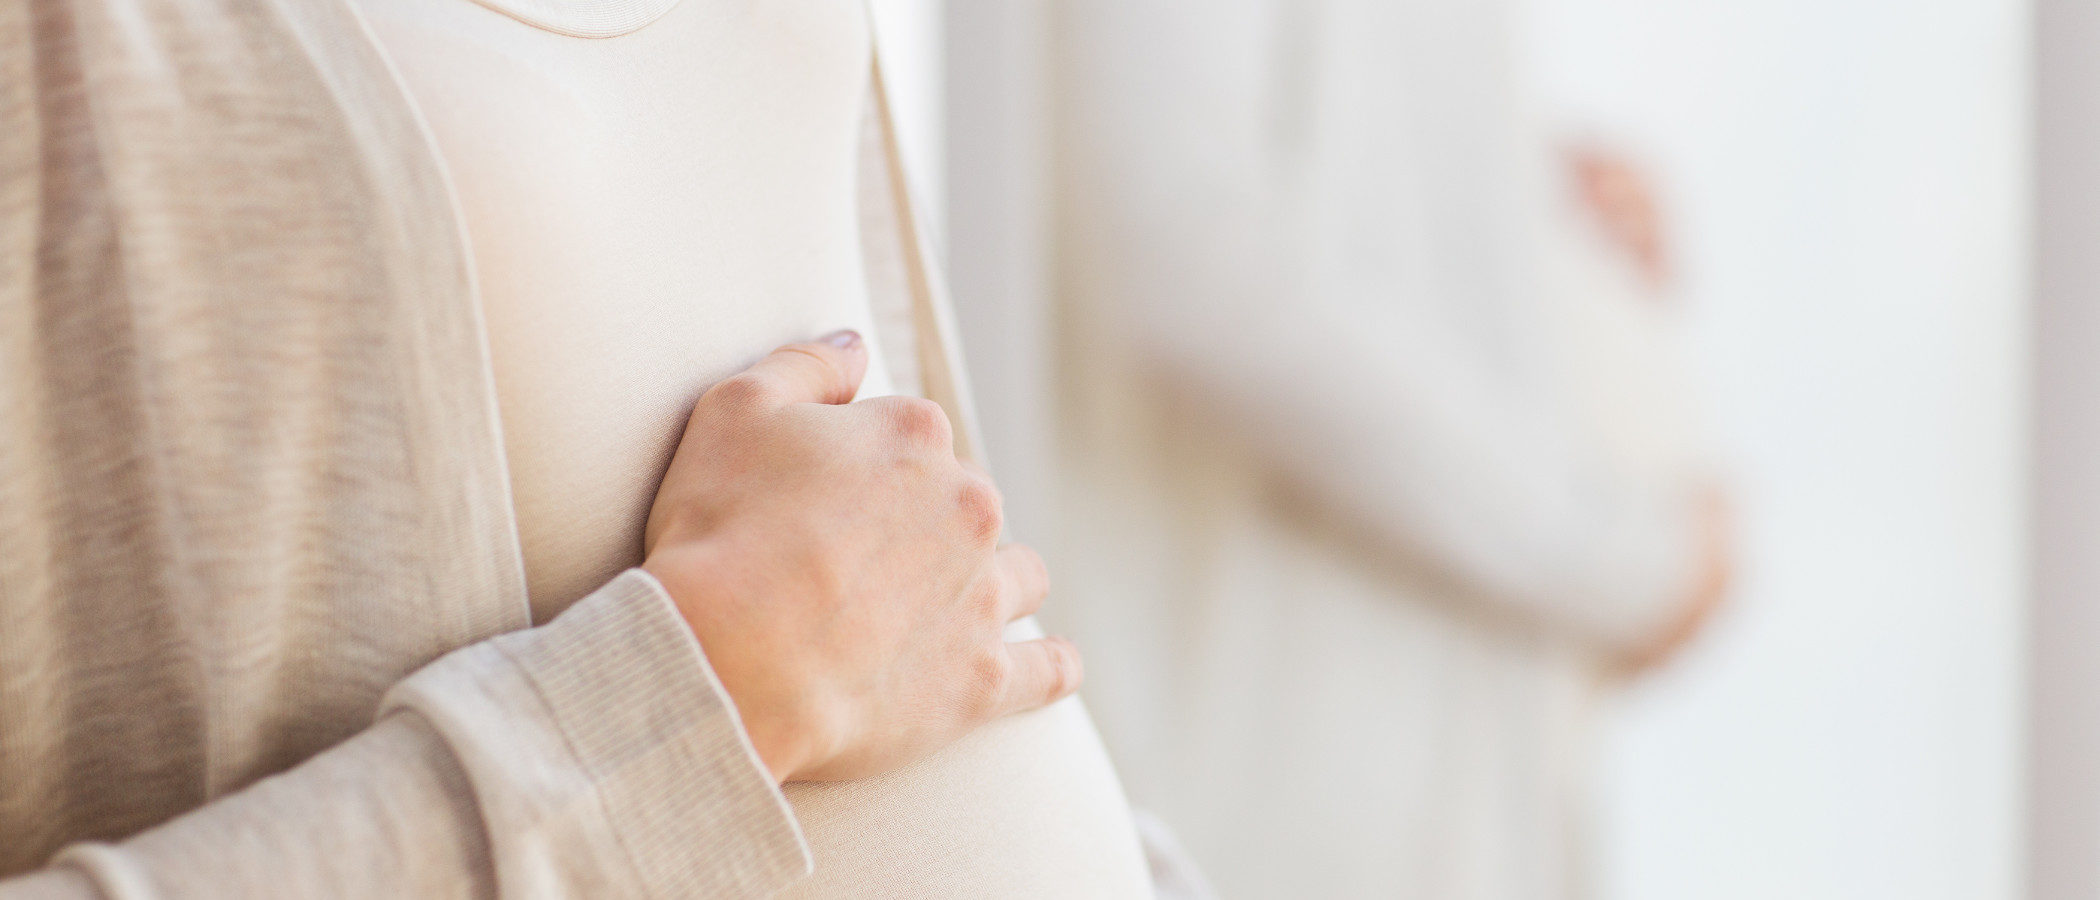 Embarazo molar: todo lo que necesitas saber